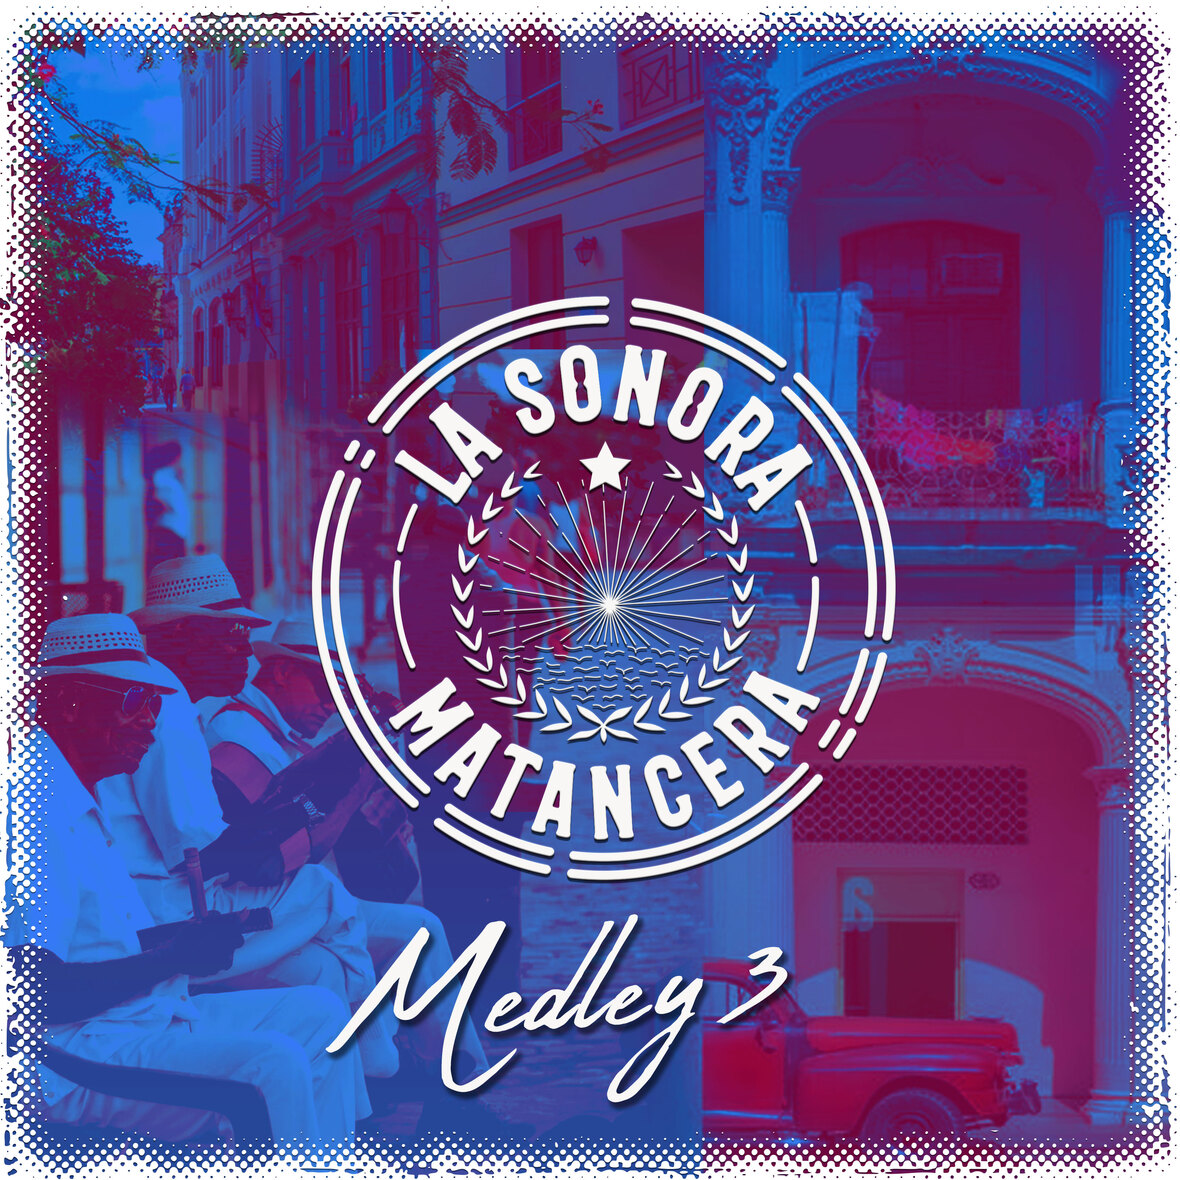 LA SONORA MATANCERA presenta nuevo trabajo discográfico “Medley 3”